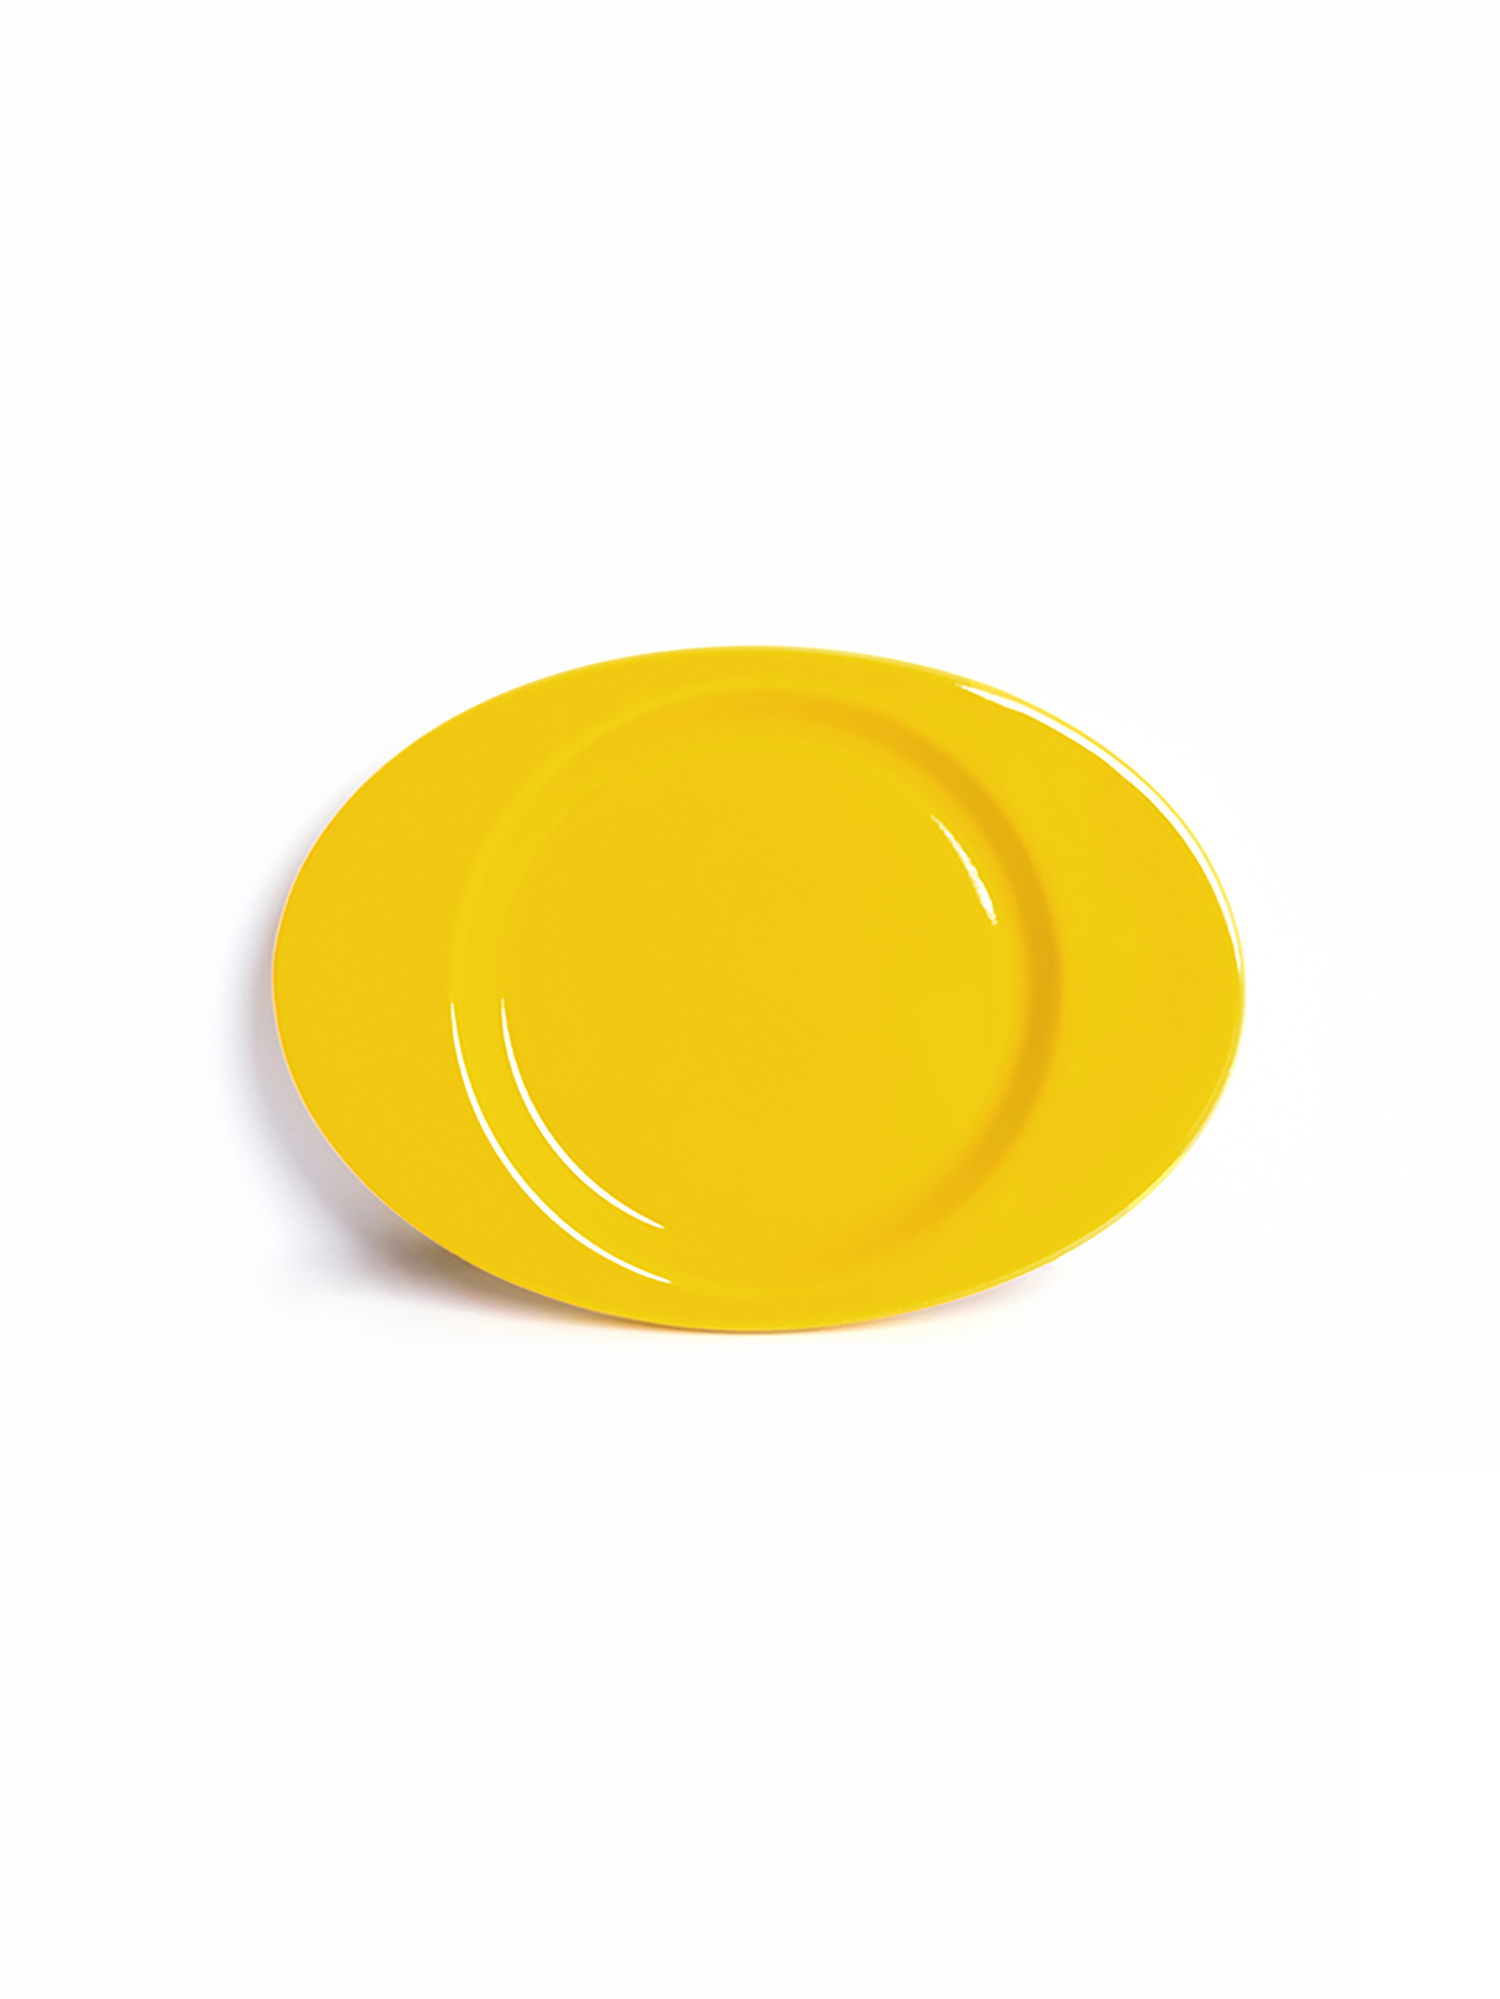 YEP Signature Plate - Yellow